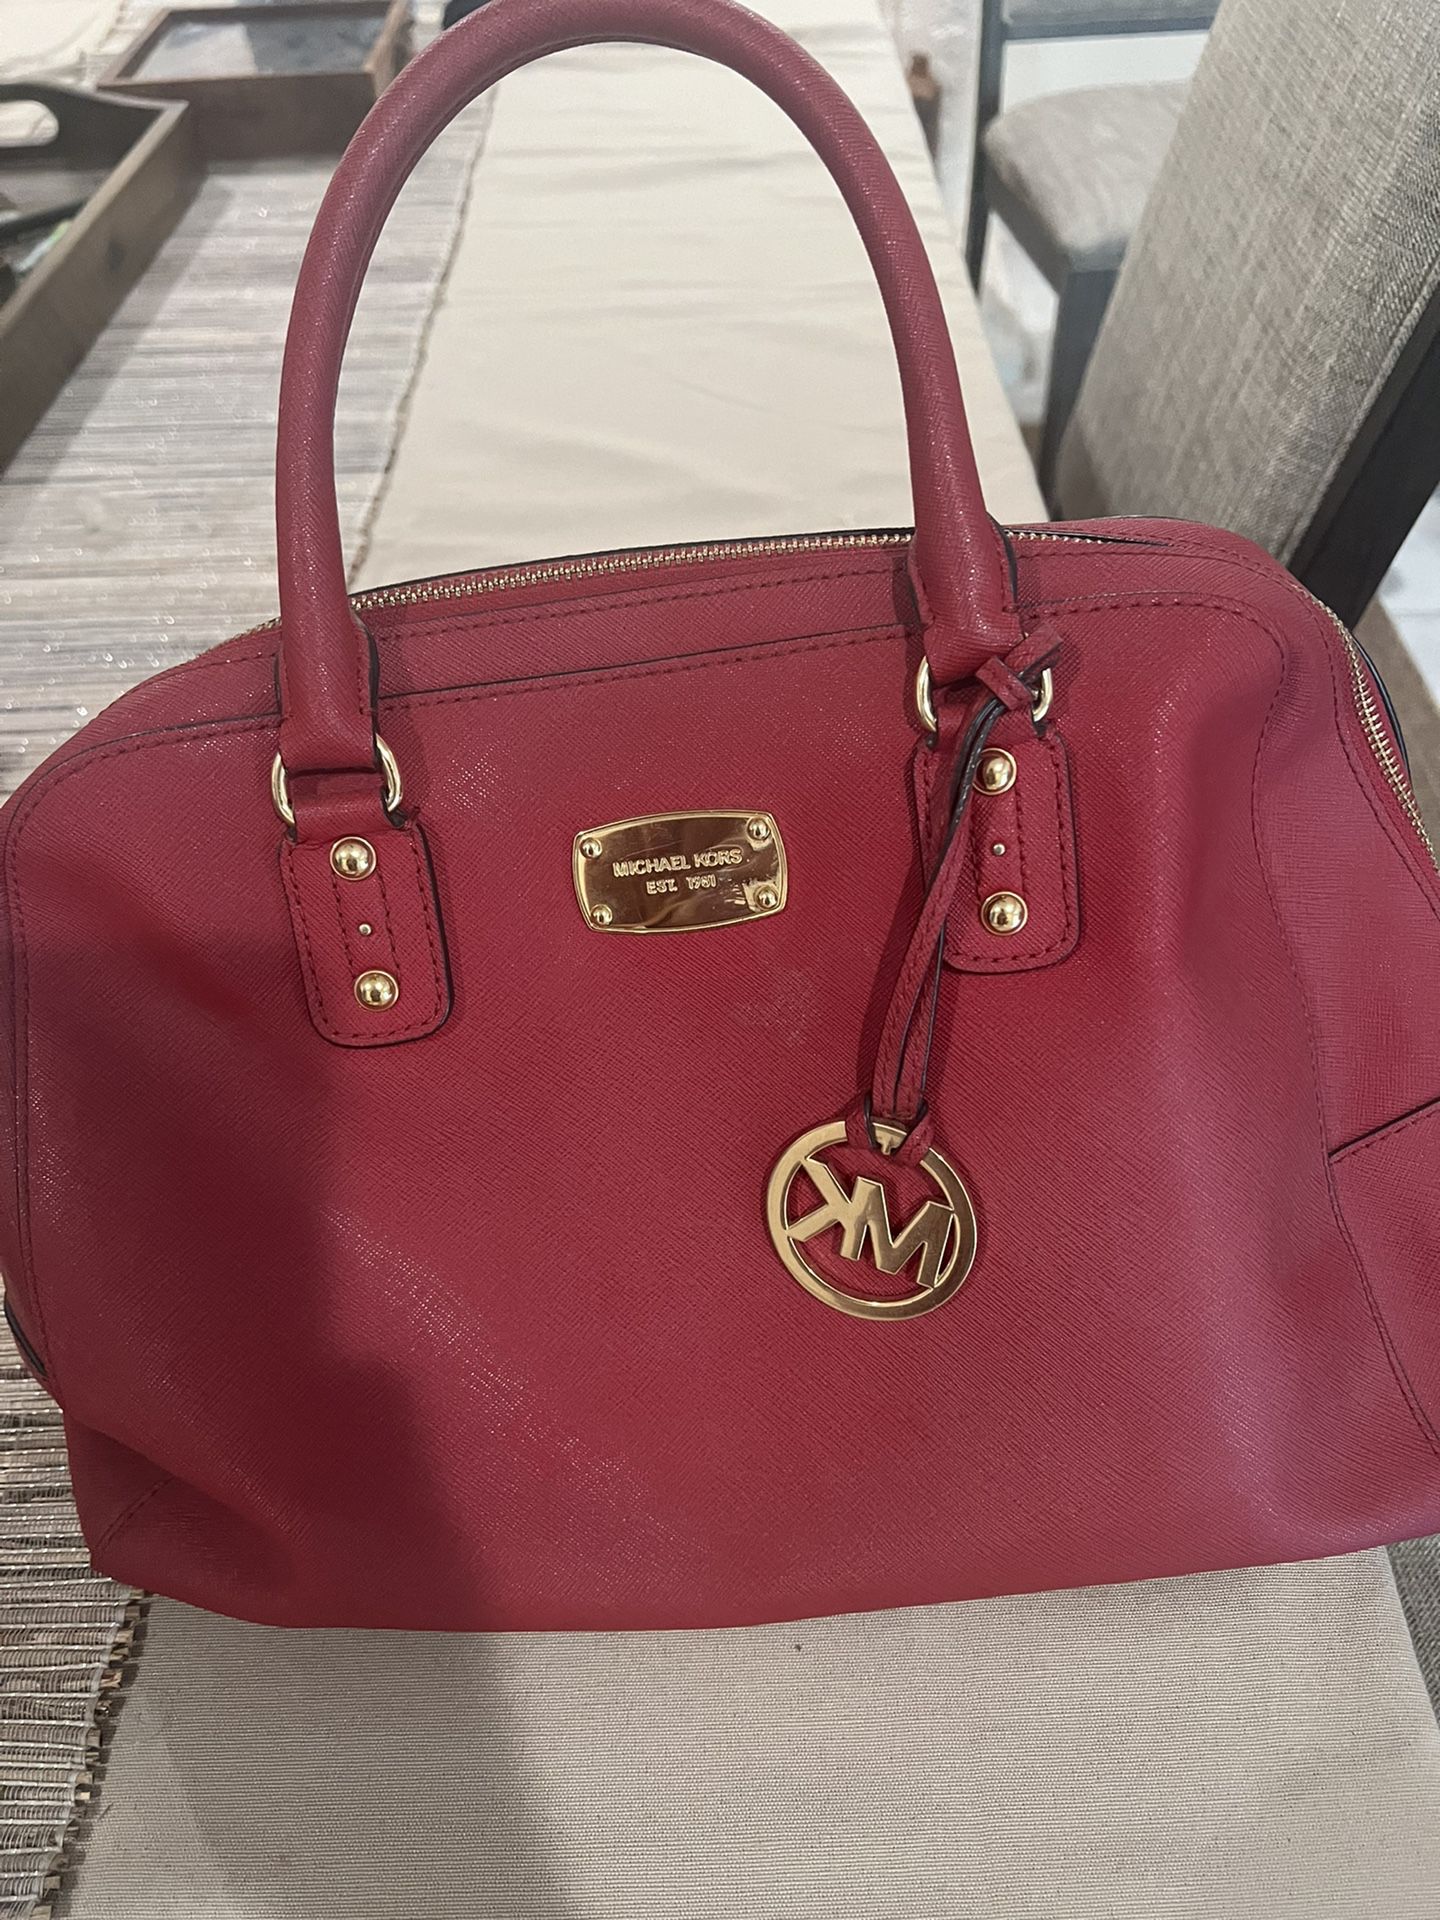 Michael Kors Red bag pure leather shoulder bag for Sale in Fremont